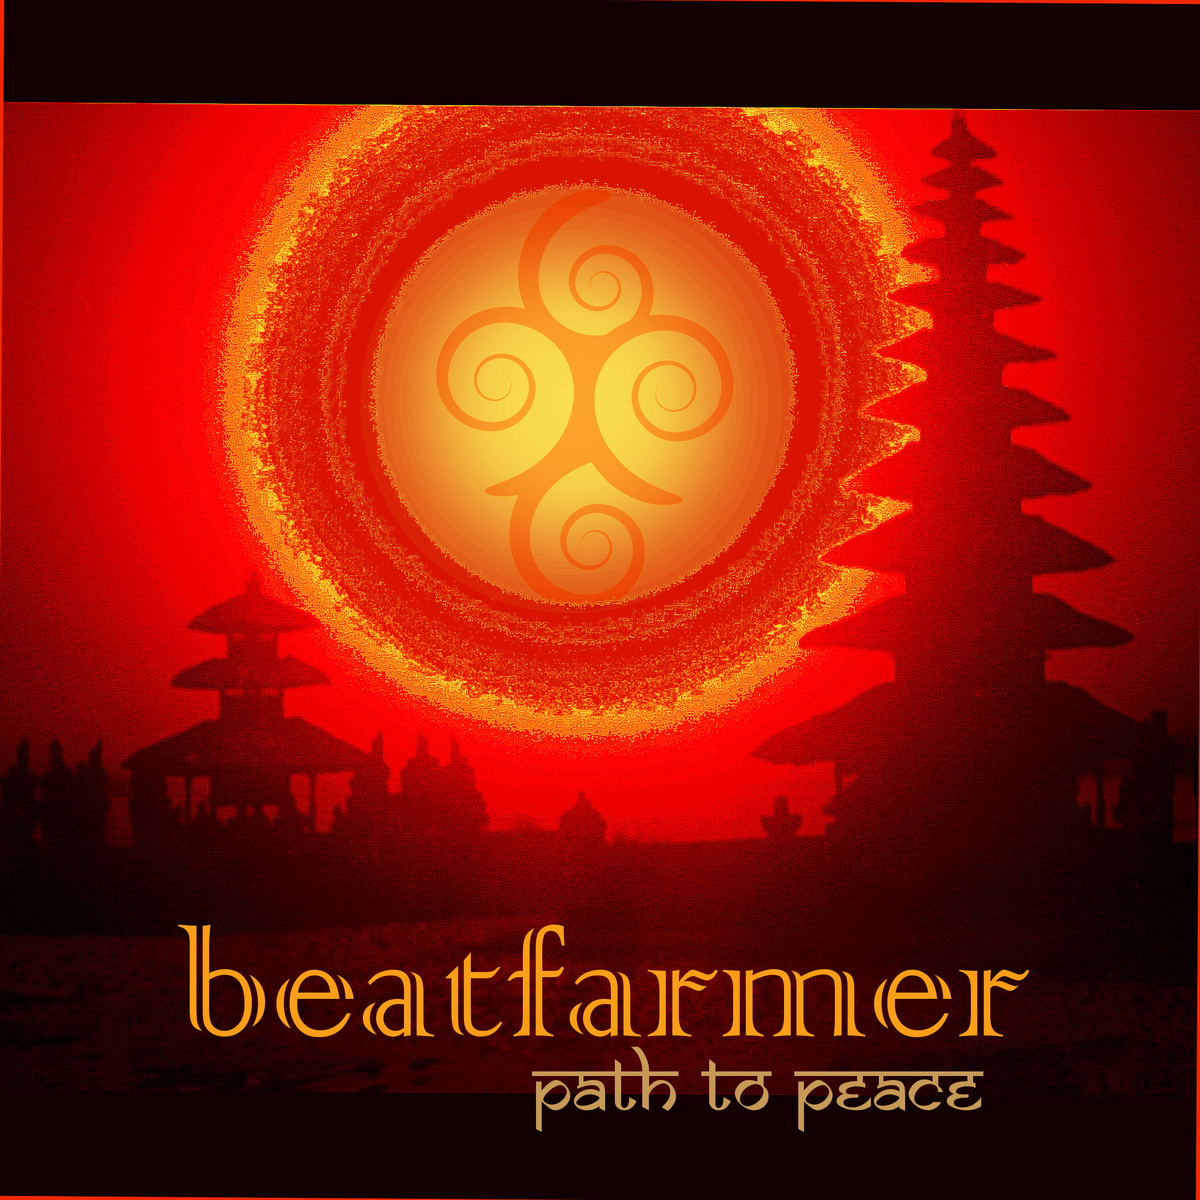 ডাউনলোড করুন Beatfarmer - Path to Peace (live edit)